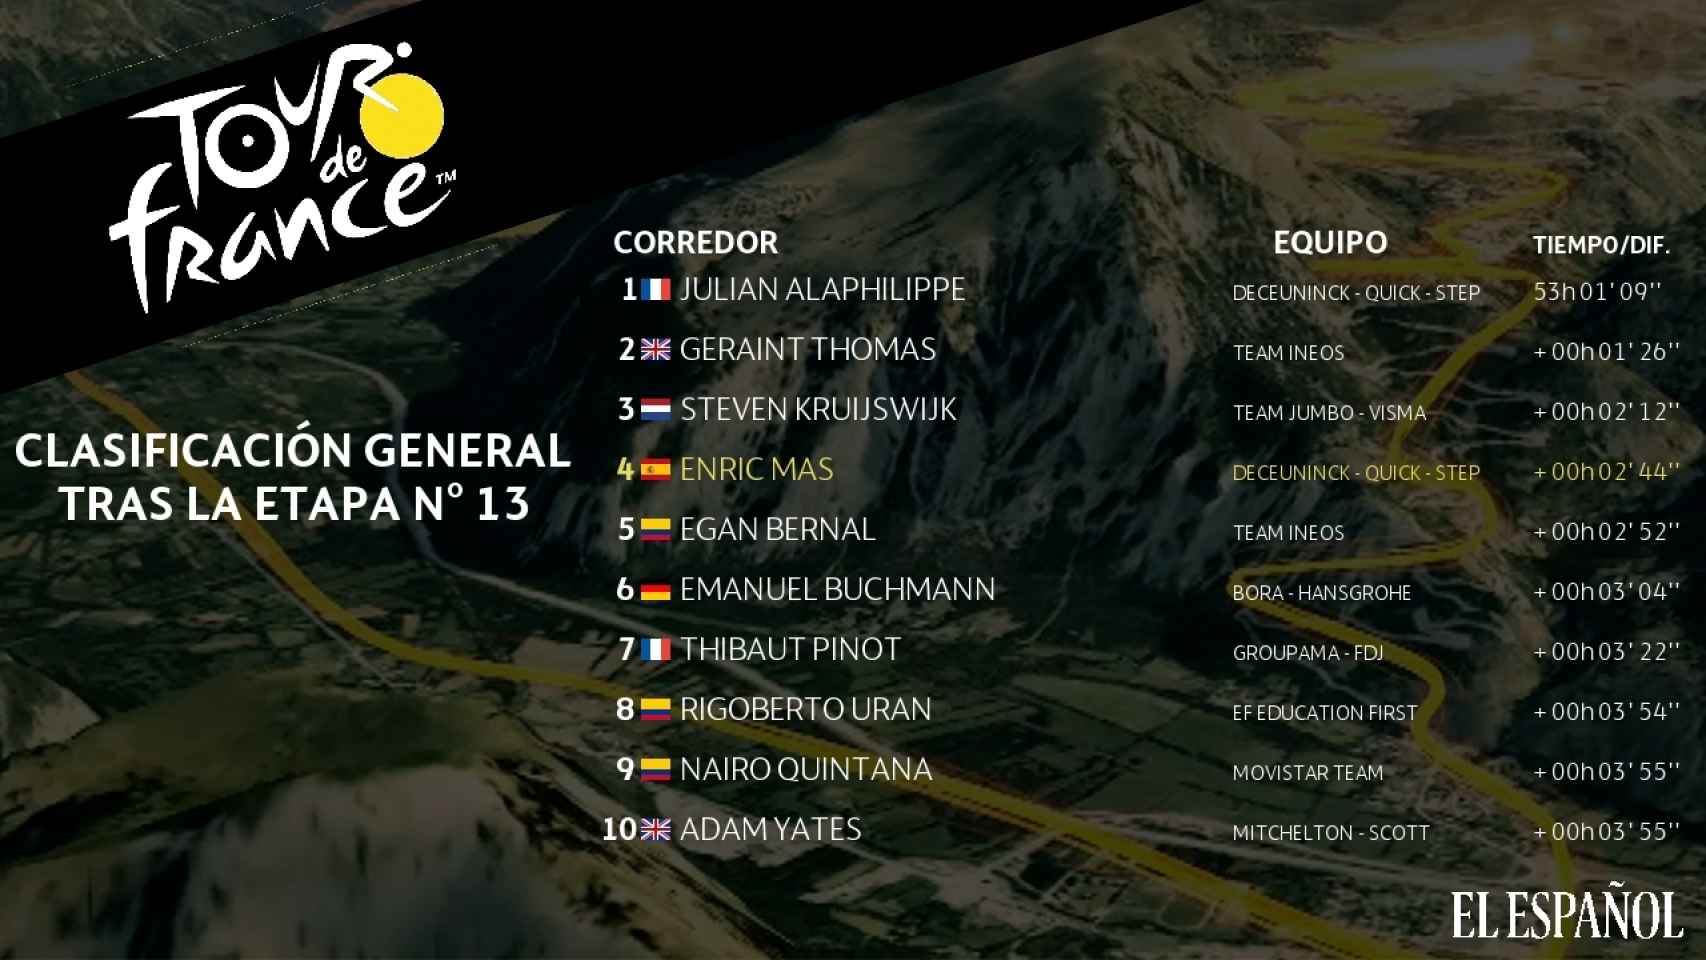 Clasificación general tras la etapa nº13 del Tour de Francia